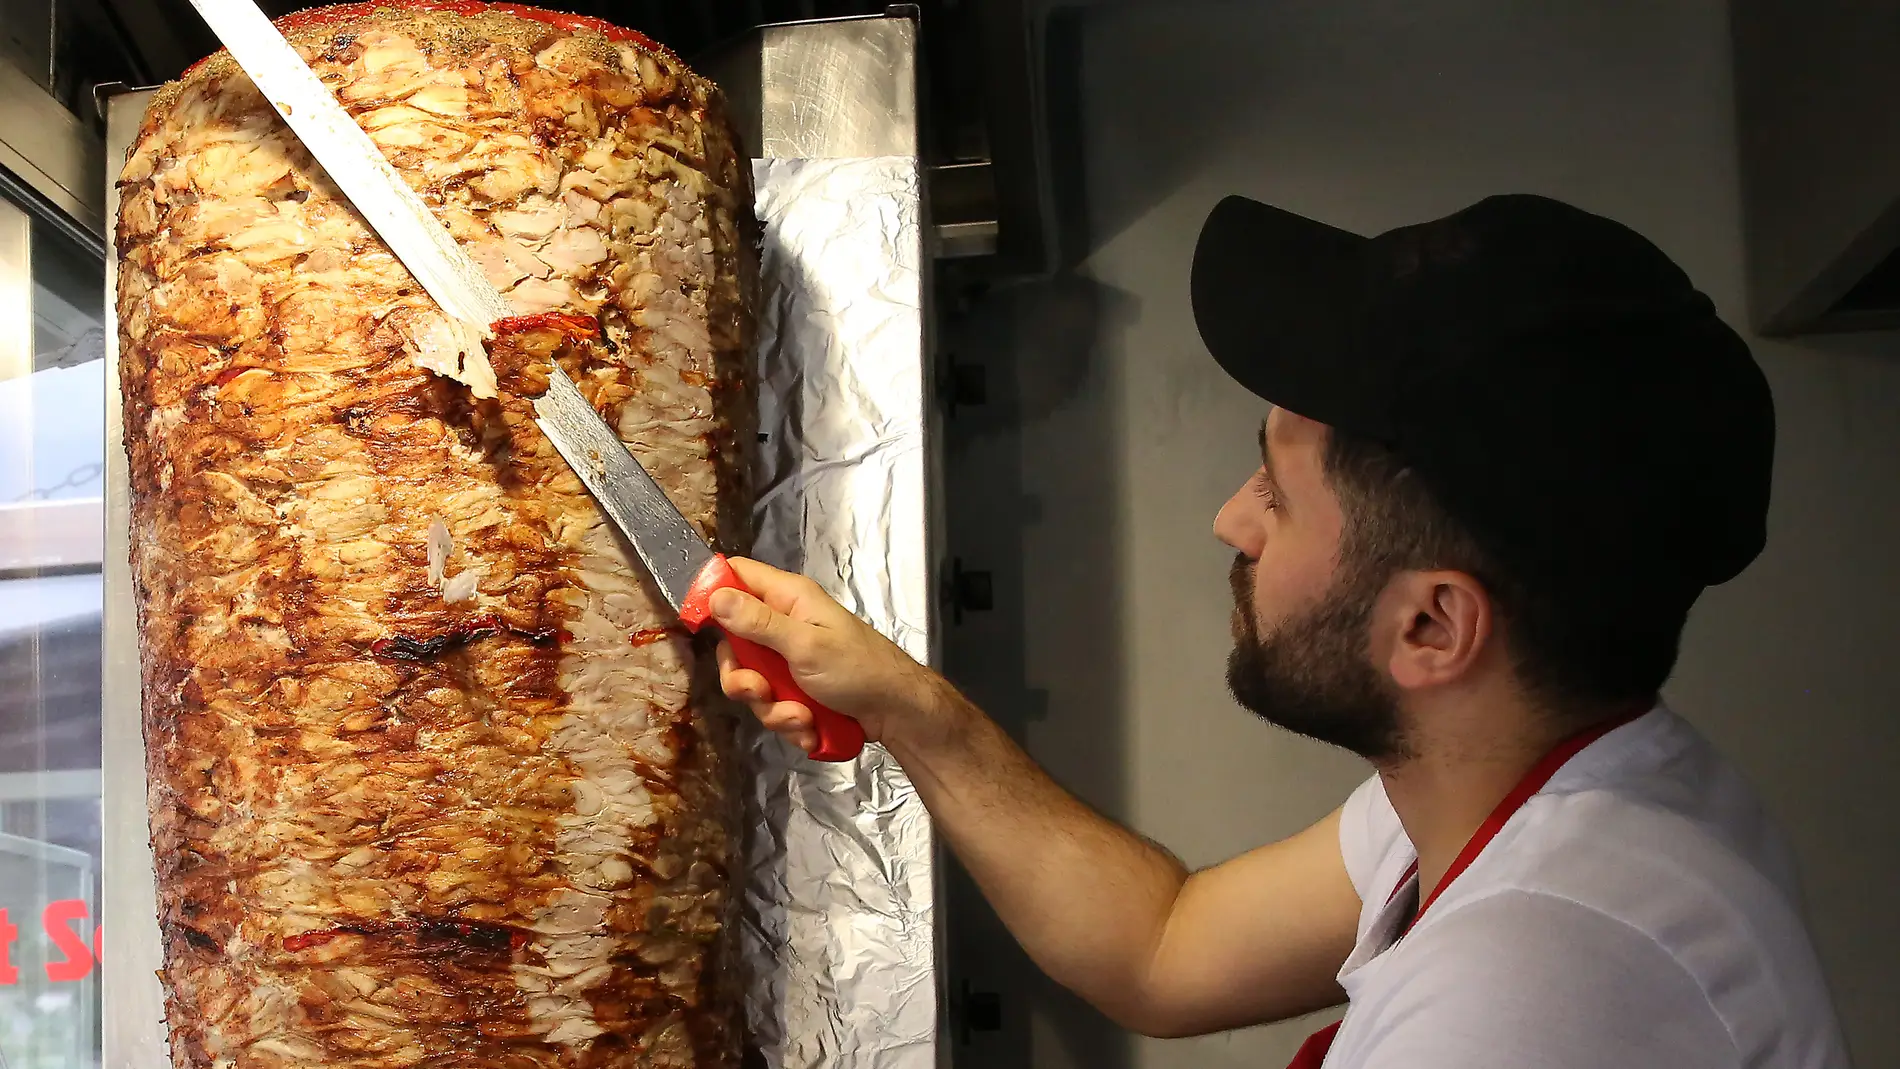 La amenaza de un cliente al responsable de un kebab: "Como me pongas lechu te encañono"